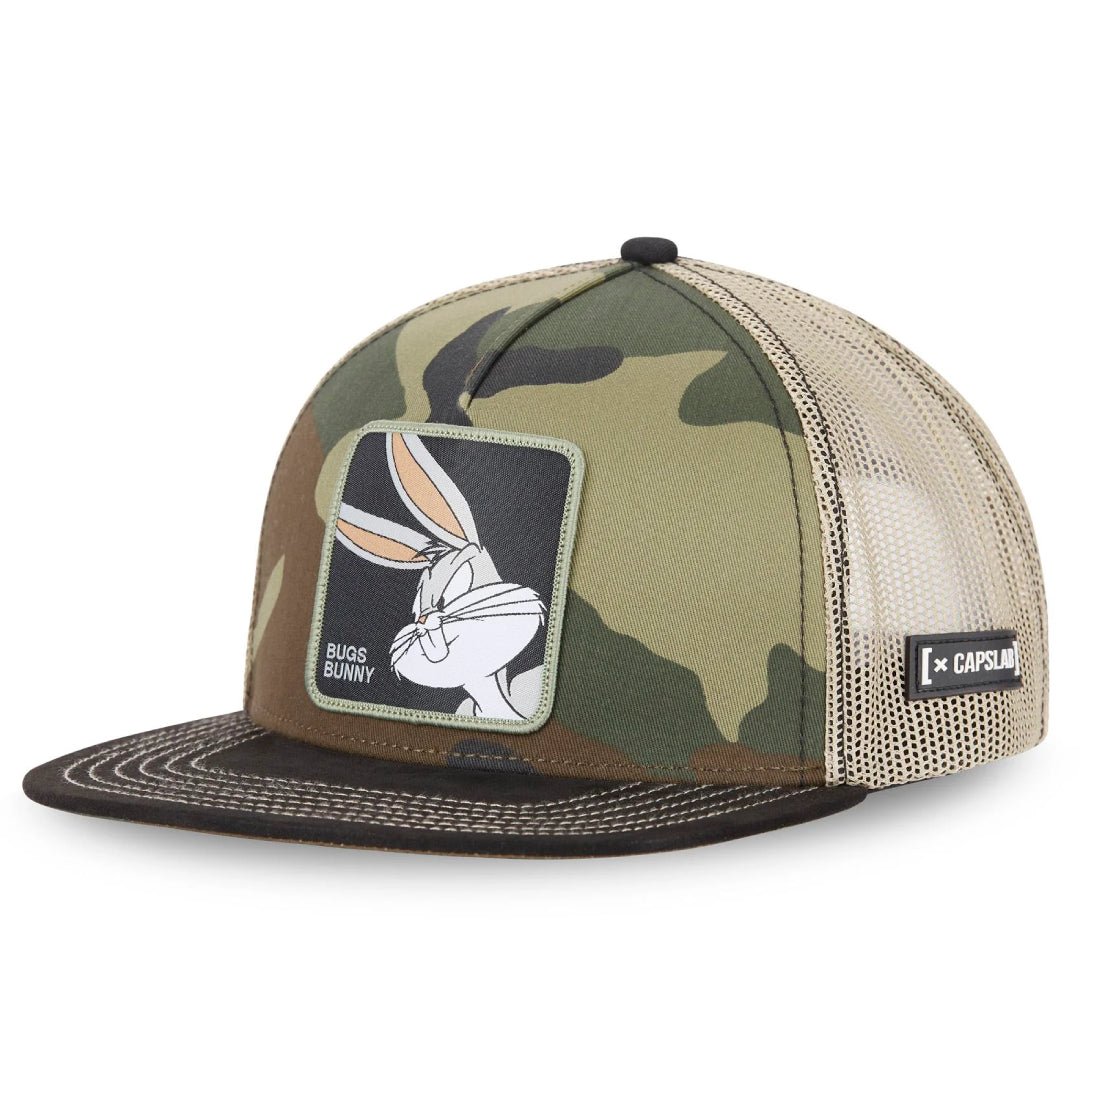 Queue Caps Bugs Bunny Cap - Camo - قبعة - Store 974 | ستور ٩٧٤